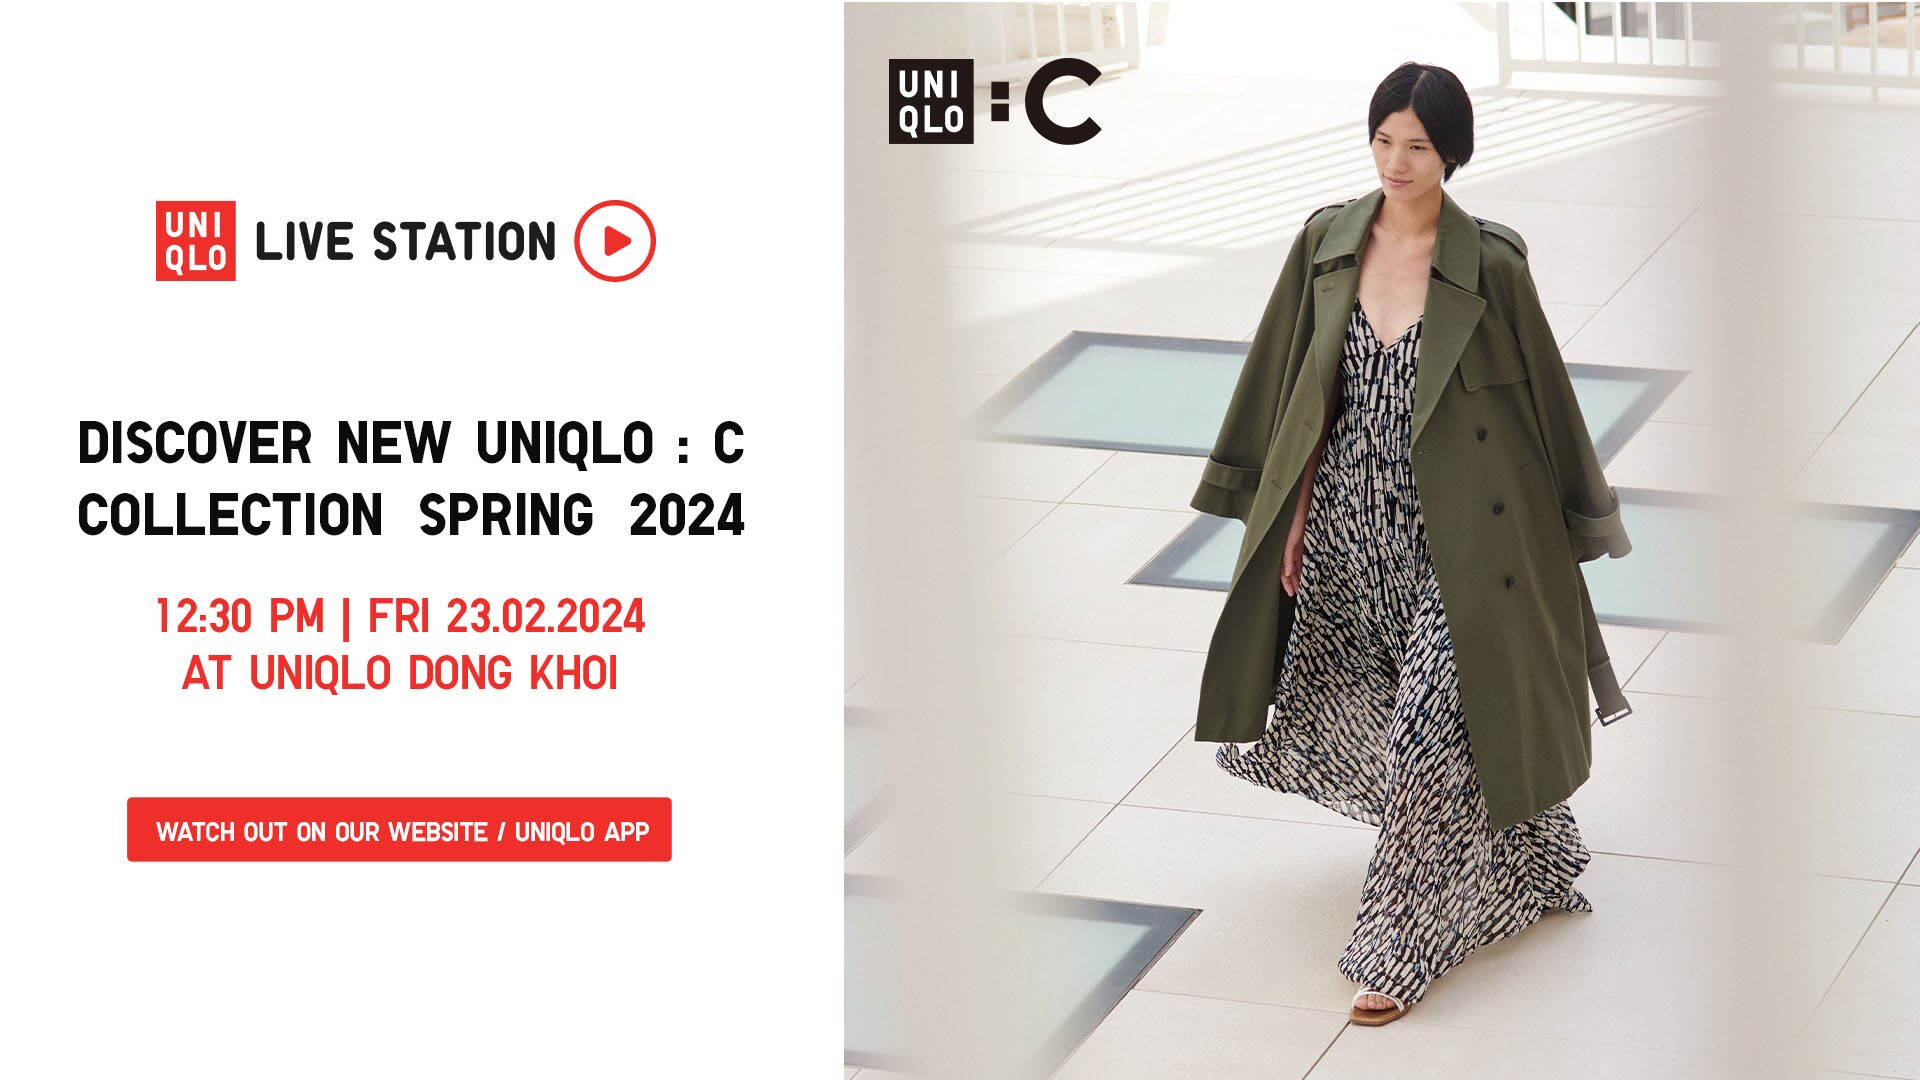 Uniqlo Utility Blouson Short Jacket Outit #uniqlo #menswear #fashion  #Jacket #style #outfit - YouTube